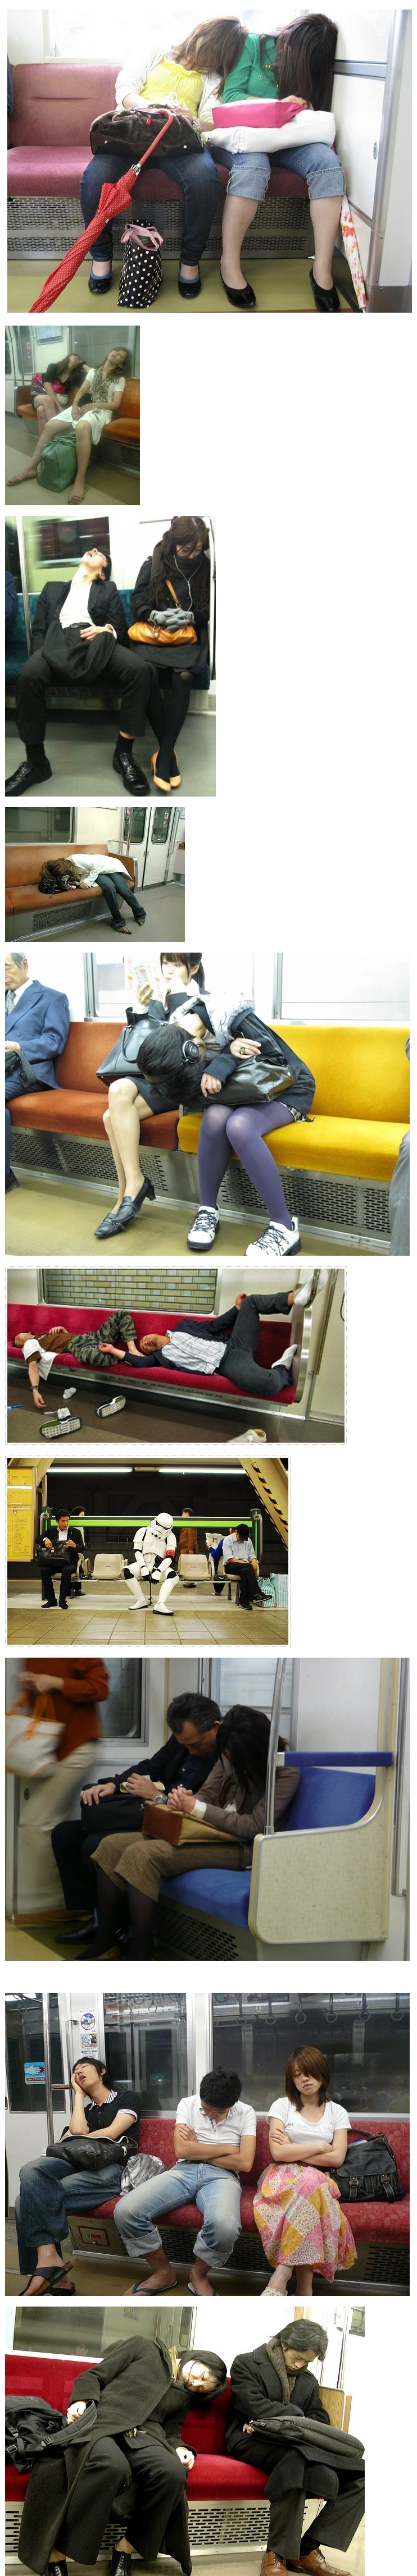 지하철에서의 졸음은 죽음이다